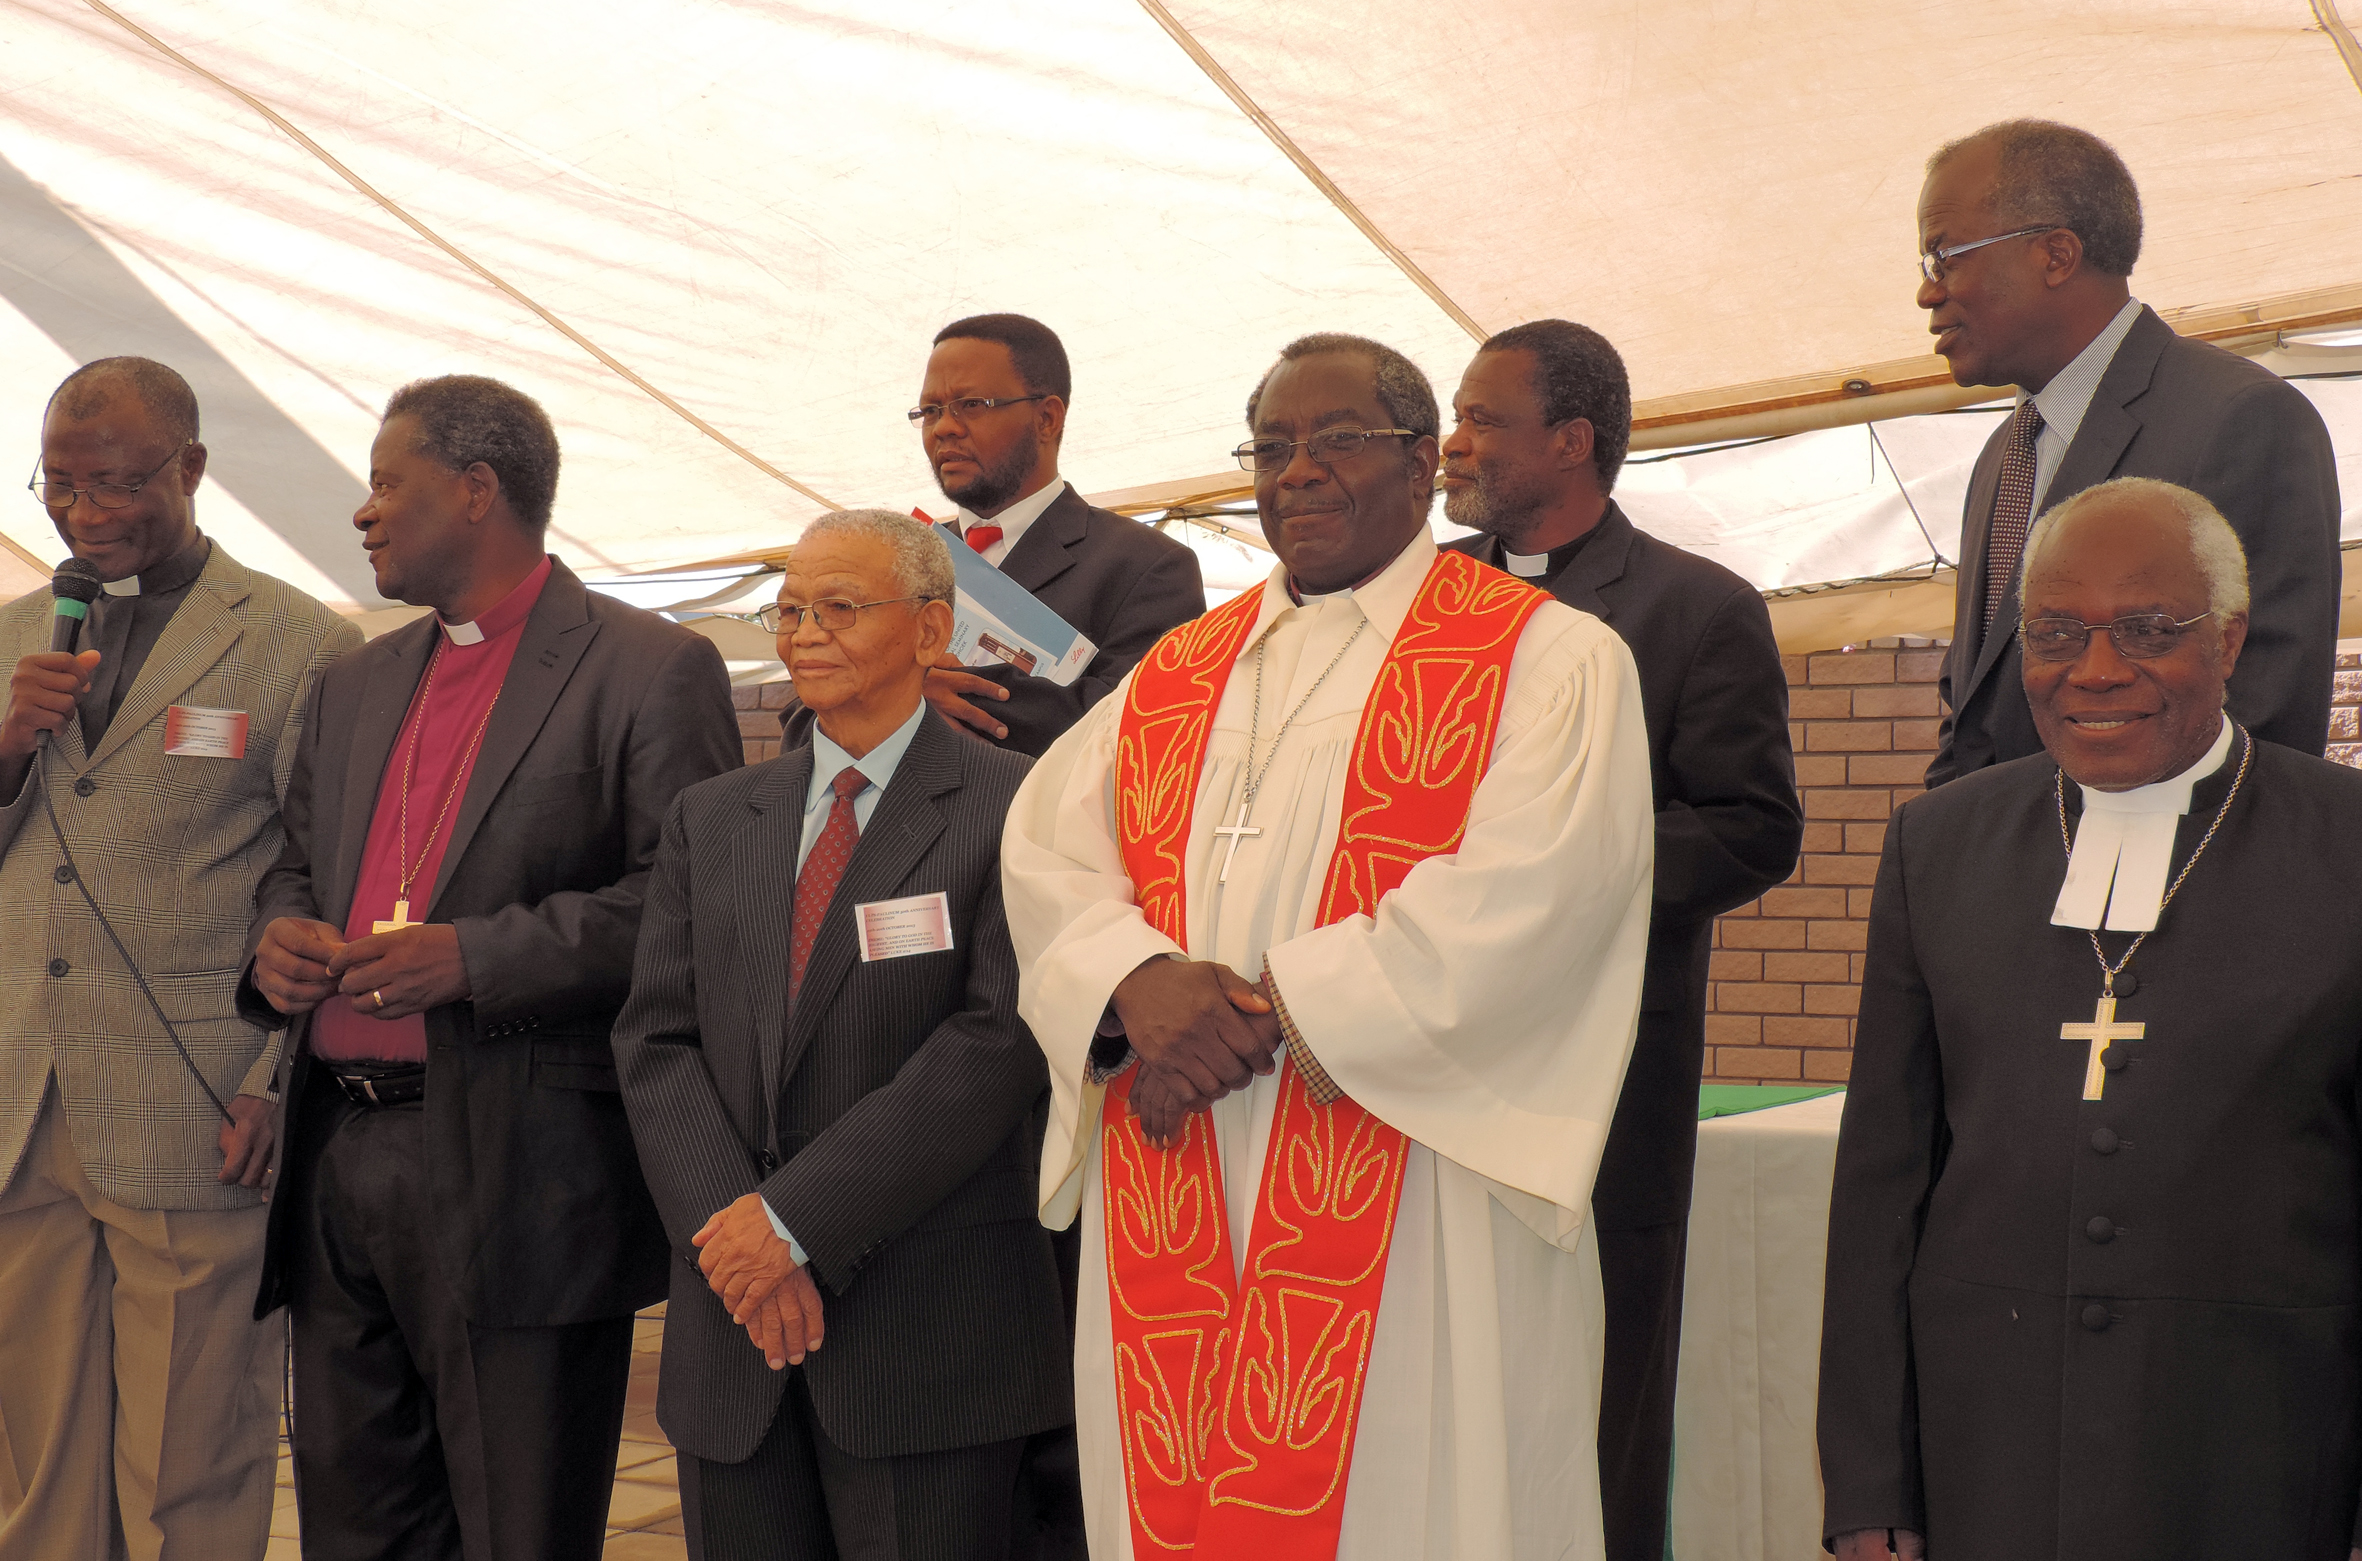 Paulinumin merkitys on ollut ja on suuri molemmille Namibian luterilaisille kirkoille ja niiden työntekijäkoulutukselle. Paulinumissa ovat opiskelleet mm. TT Paulus Ndamanomhata